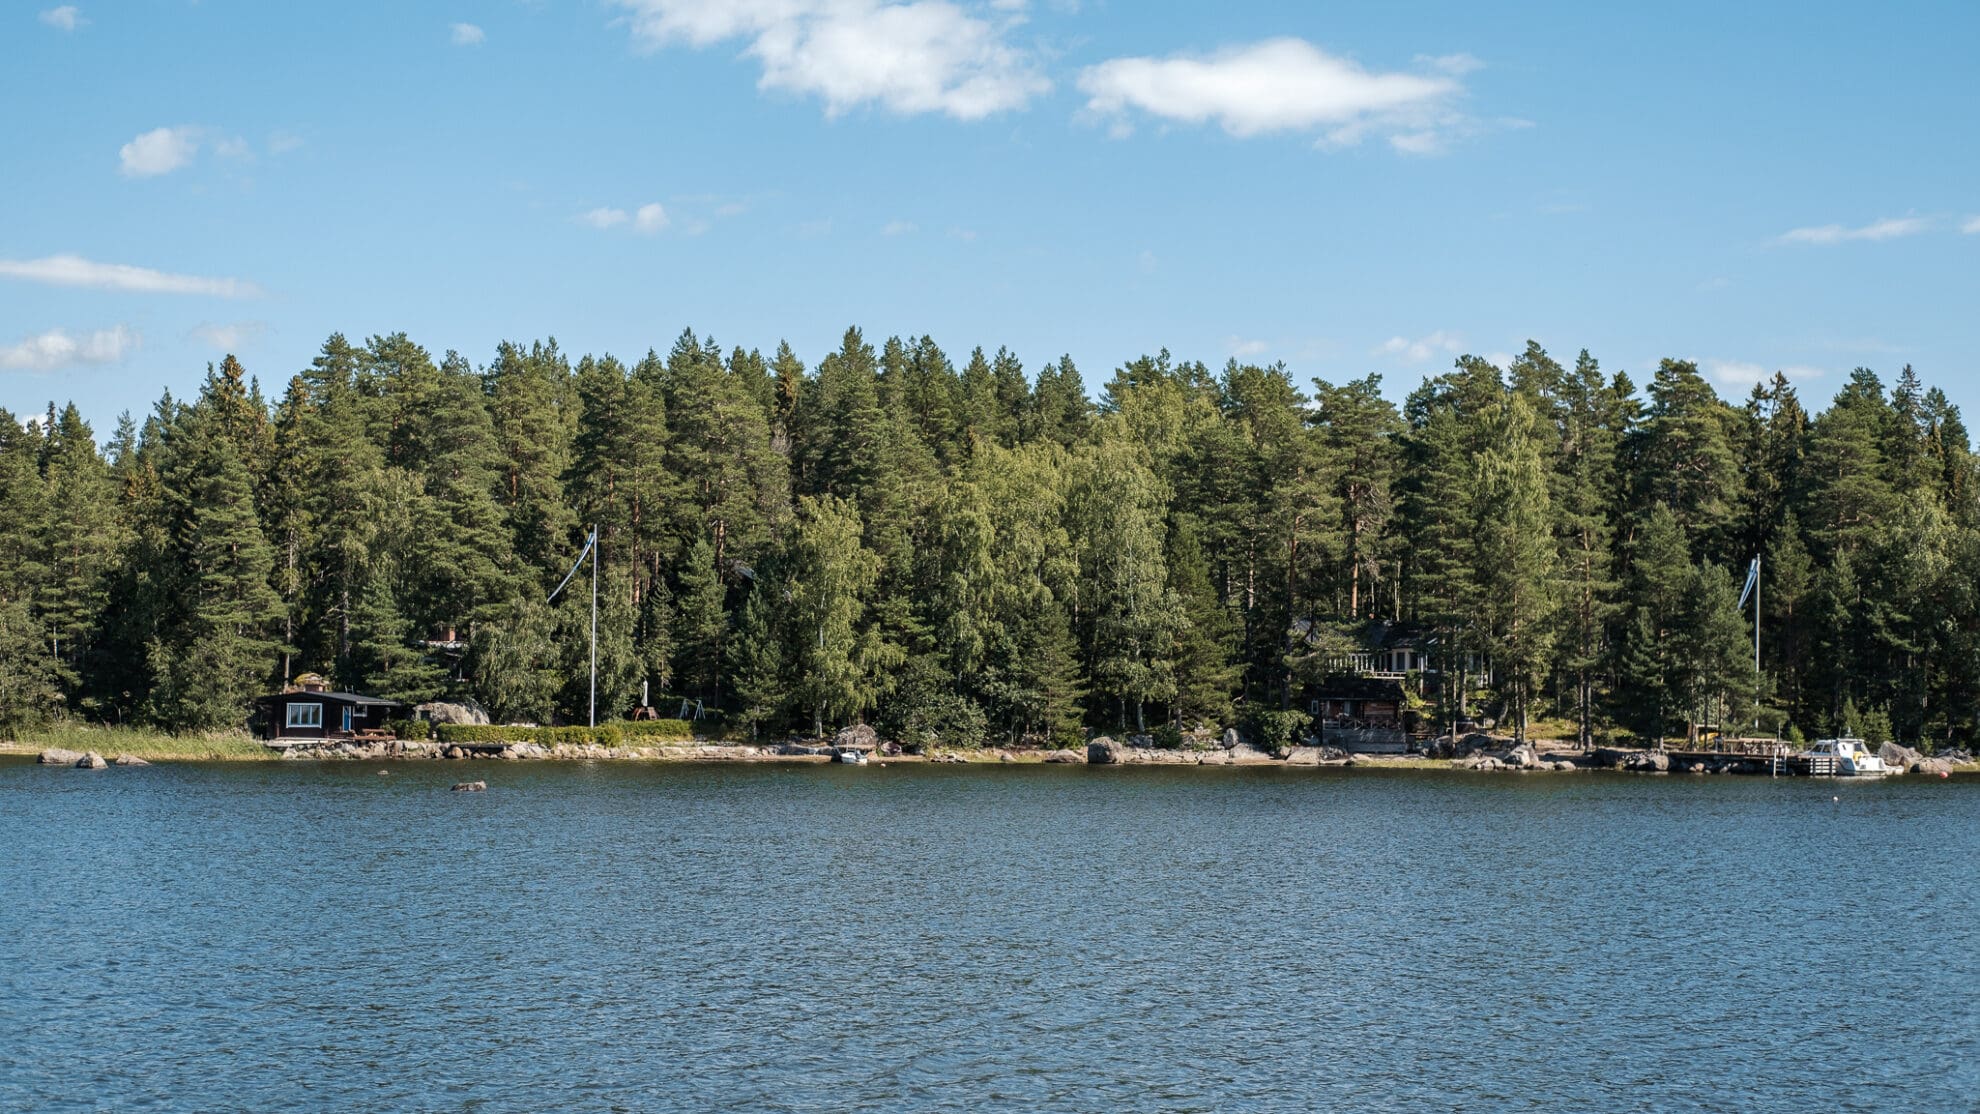 Mehrere finnische Mökkis im Wald am Ufer mit Anlegestelle und gehissten Finnlandfahnen.